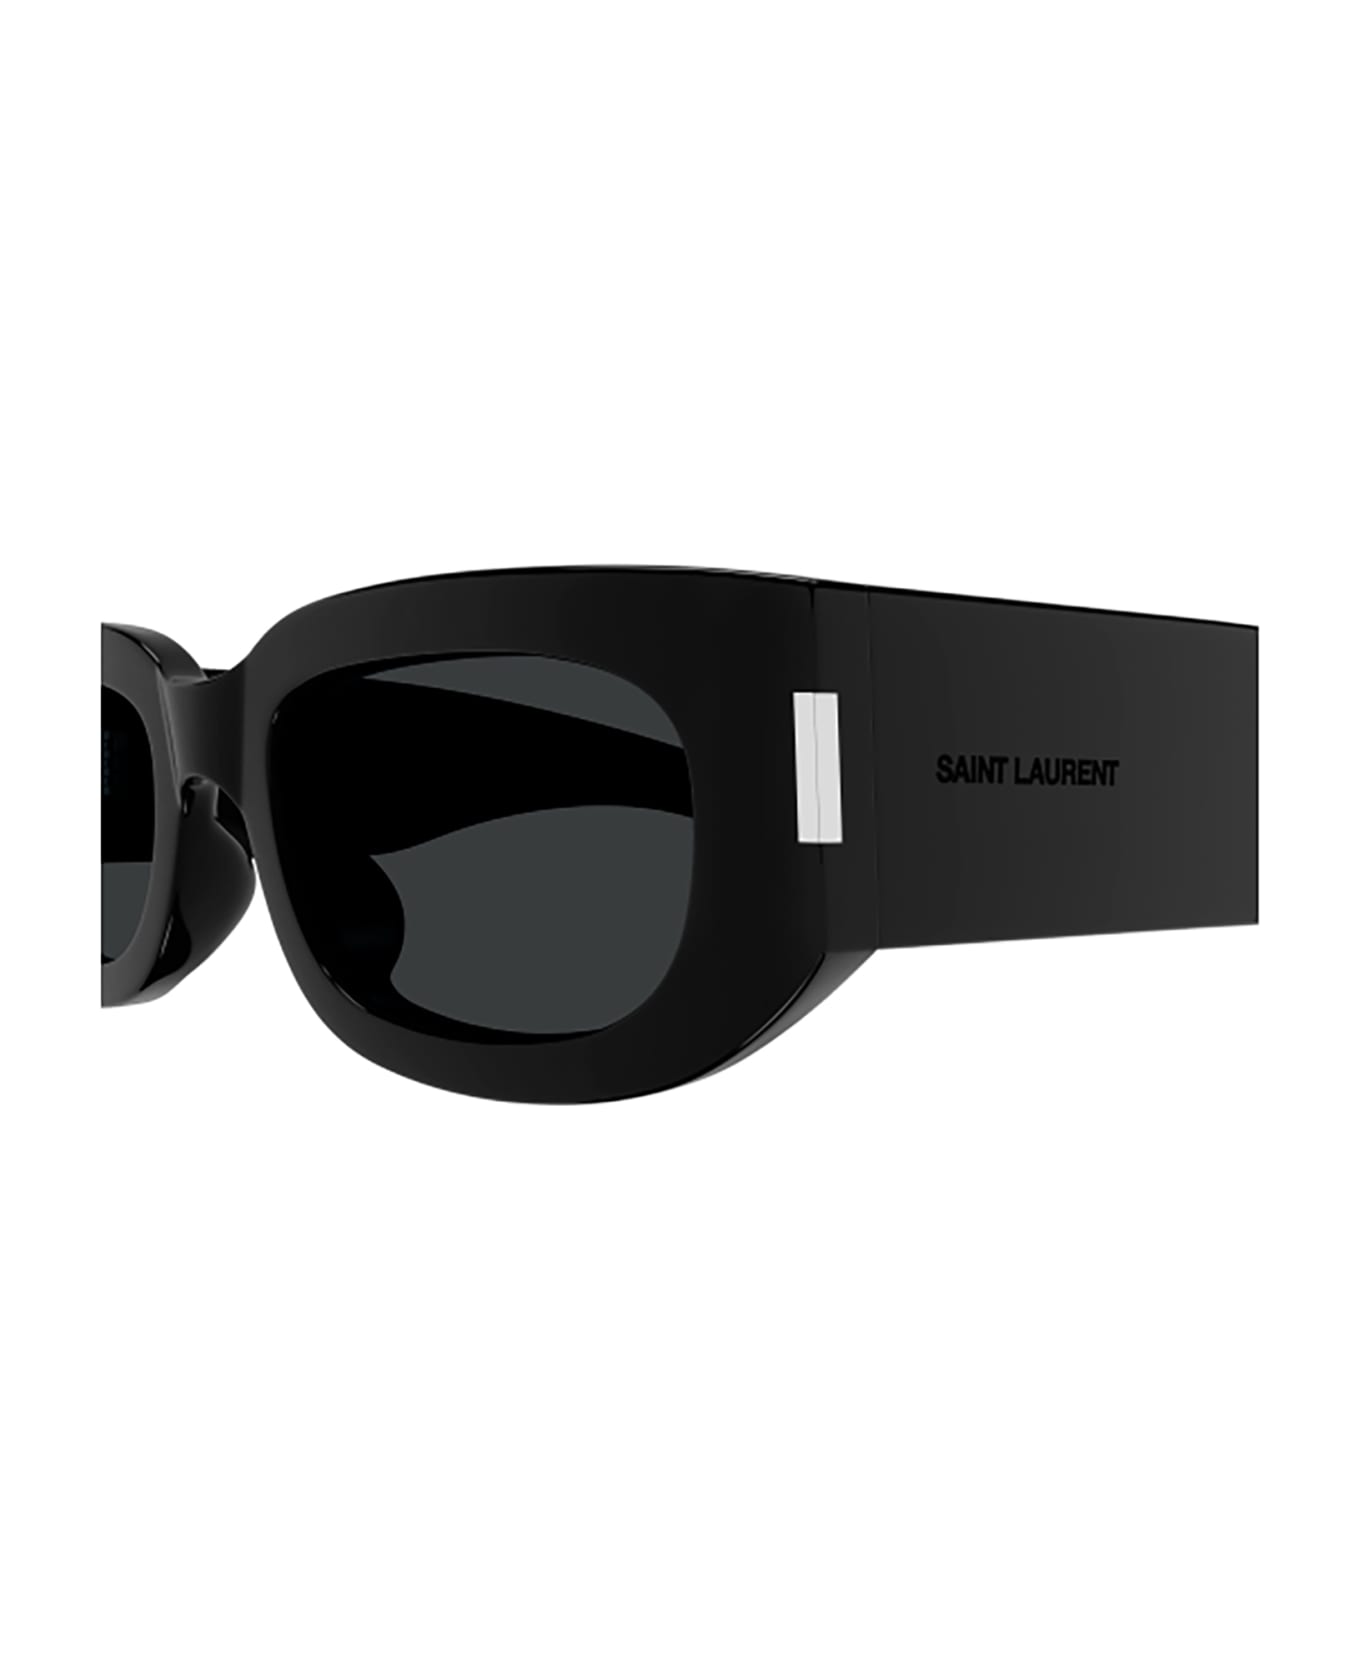 Saint Laurent Eyewear SL 697 Sunglasses - Black Black Black サングラス